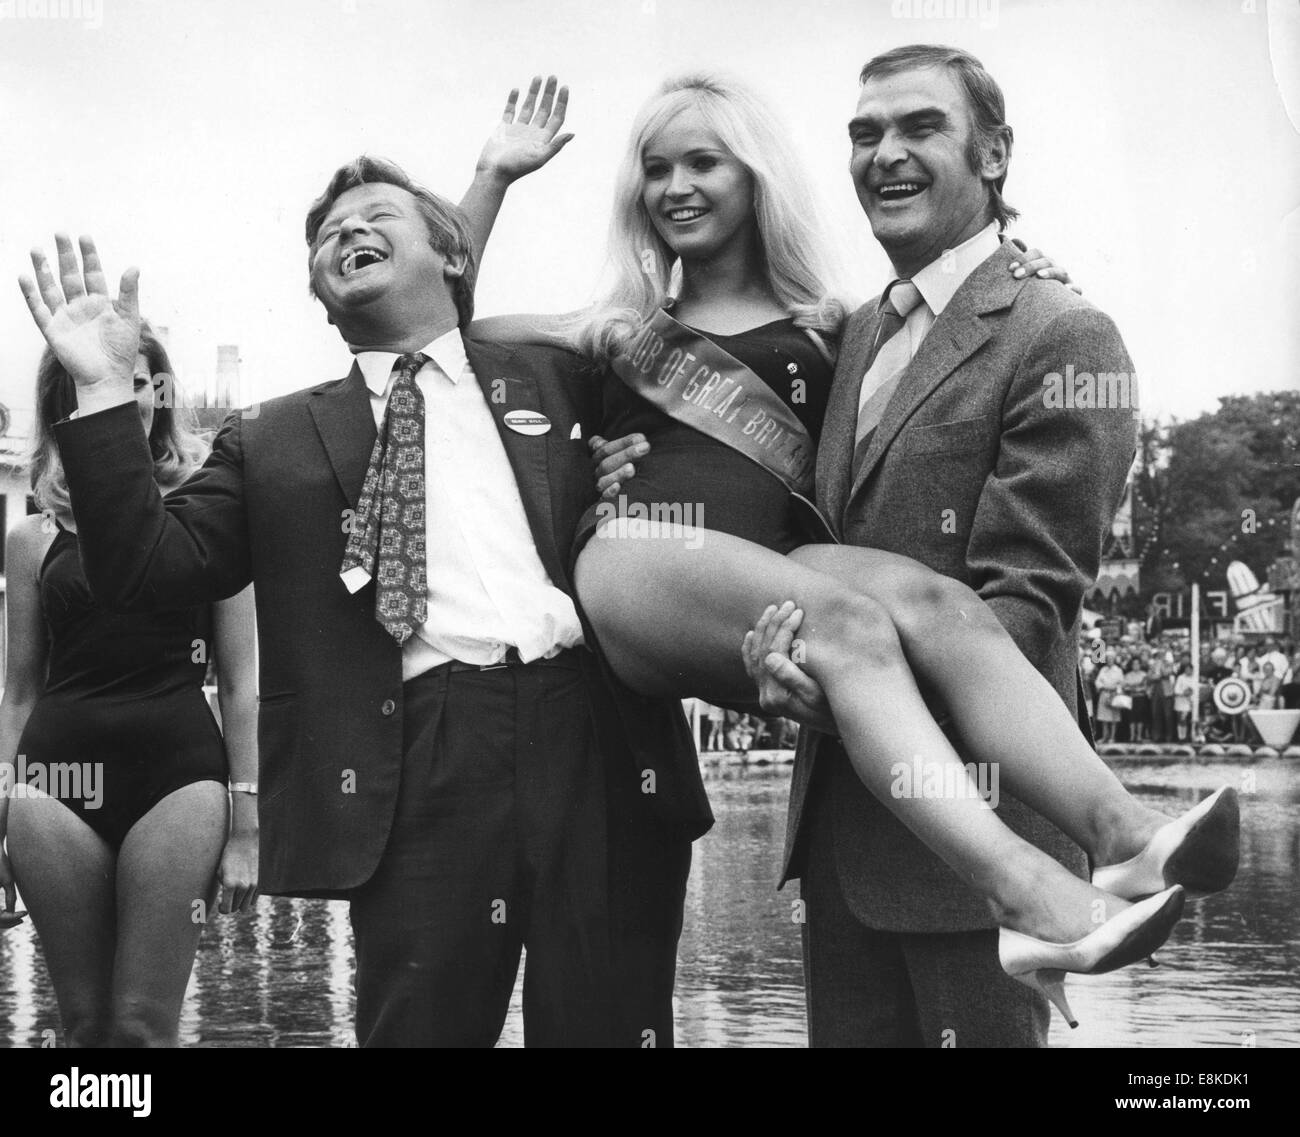 20 avril 1992 - BENNY HILL, alias ALFRED HAWTHORNE HILL (21 janvier 1924 - 20 avril 1992) était un comédien et acteur français, connu pour son programme de télévision de longue date Le Benny Hill Show. Sur la photo : May 30, 1970 - Londres, Angleterre, Royaume-Uni - MARILYN WARD, le gagnant de l'élection de Miss Variety Club de Grande-bretagne 1970 baigneuse concours est tenu par le comédien Anglais Benny Hill (1924-1992) et acteur gallois STANLEY BAKER) Germaine Michel à London Festival Jardins d'agrément au cours de la variété gala du Club. © Keystone Photos/ZUMA/ZUMAPRESS.com/Alamy fil Live News Banque D'Images